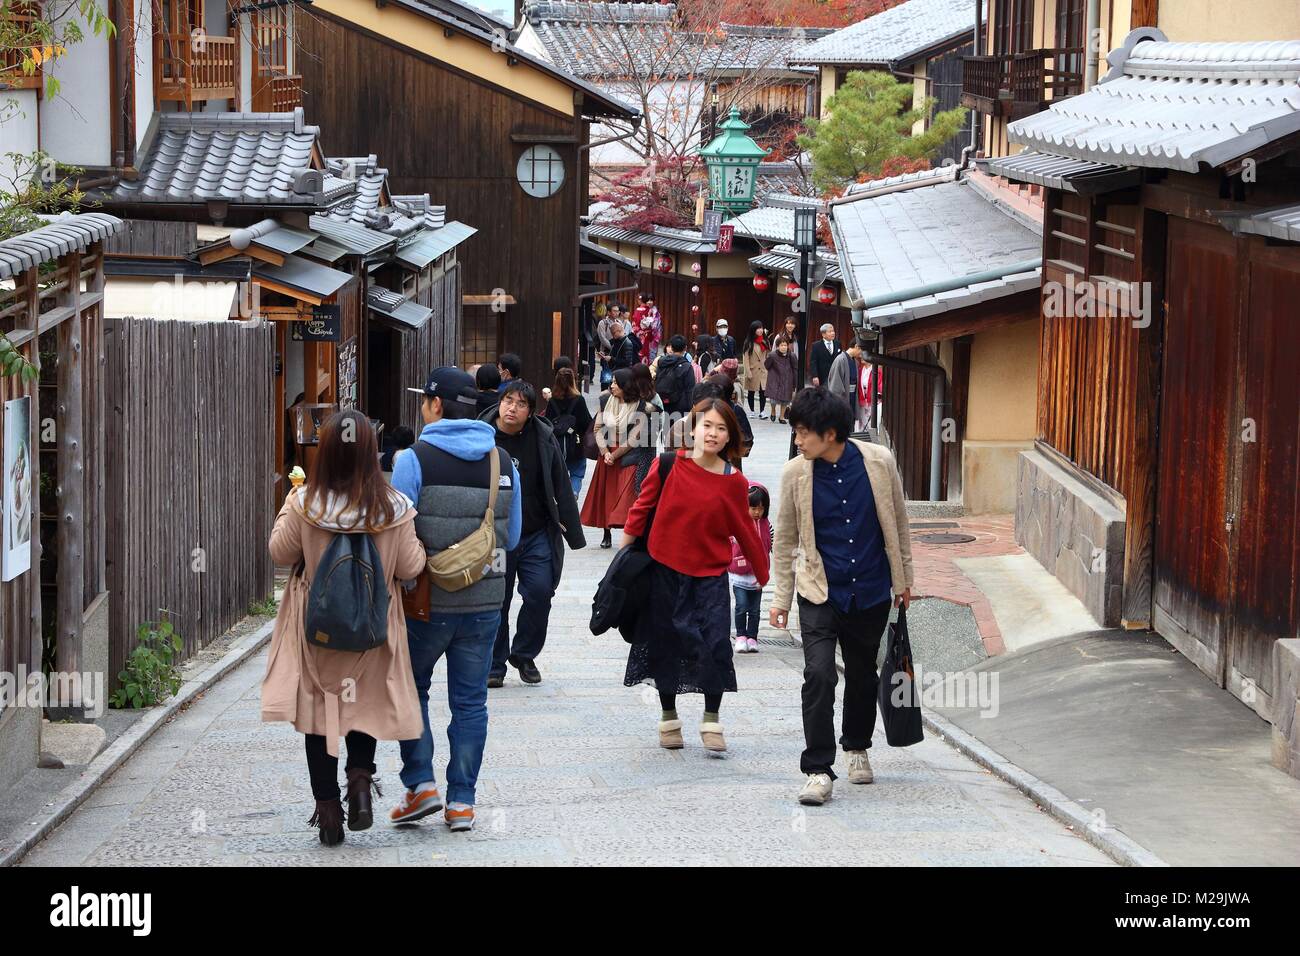 KYOTO, Giappone - 26 novembre 2016: la gente visita Higashiyama città vecchia a Kyoto, in Giappone. Kyoto ha 17 i siti del Patrimonio Mondiale dell'UNESCO. Foto Stock